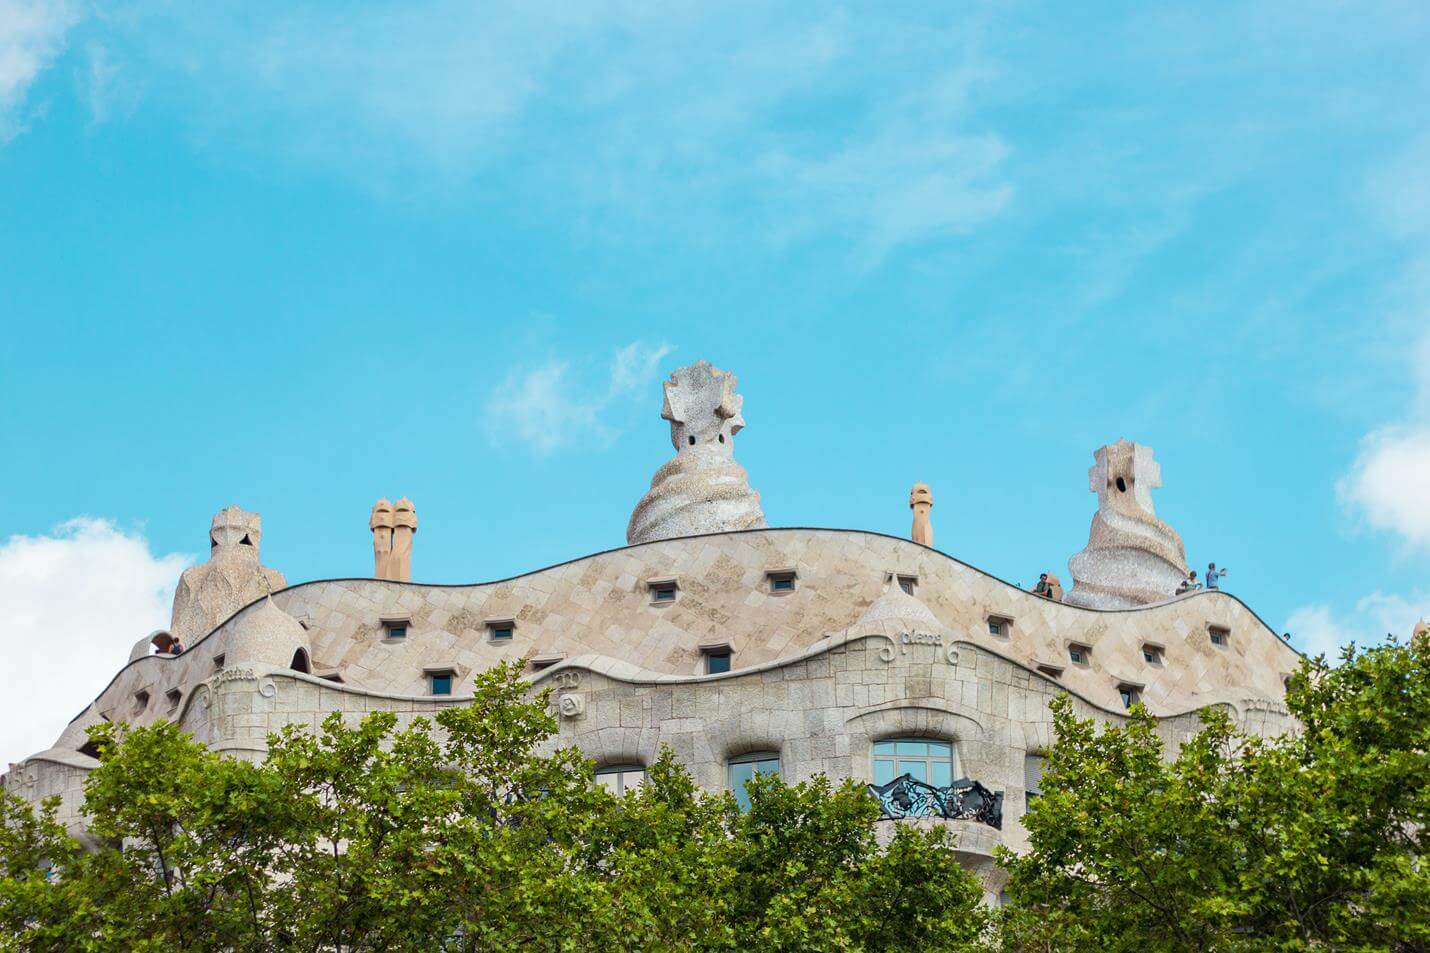 Casa Milà in Barcelona - Top